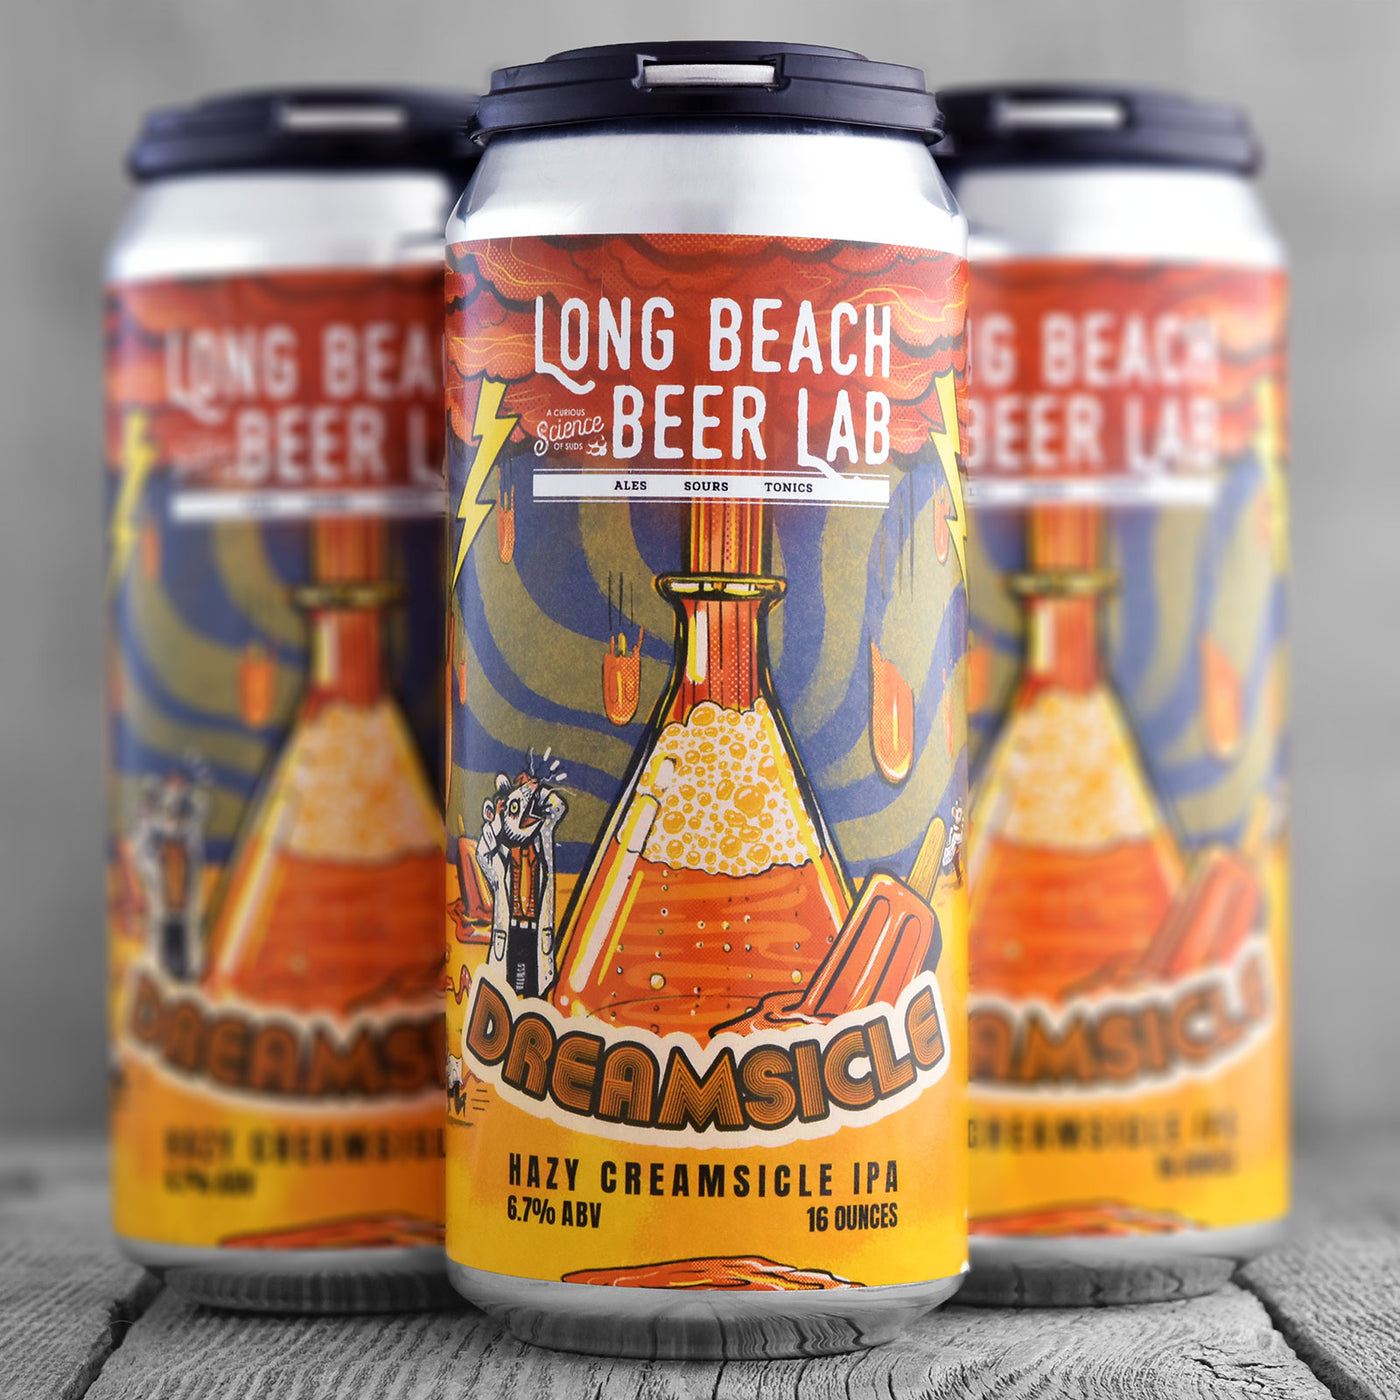 Long Beach Beer Lab Dreamsicle